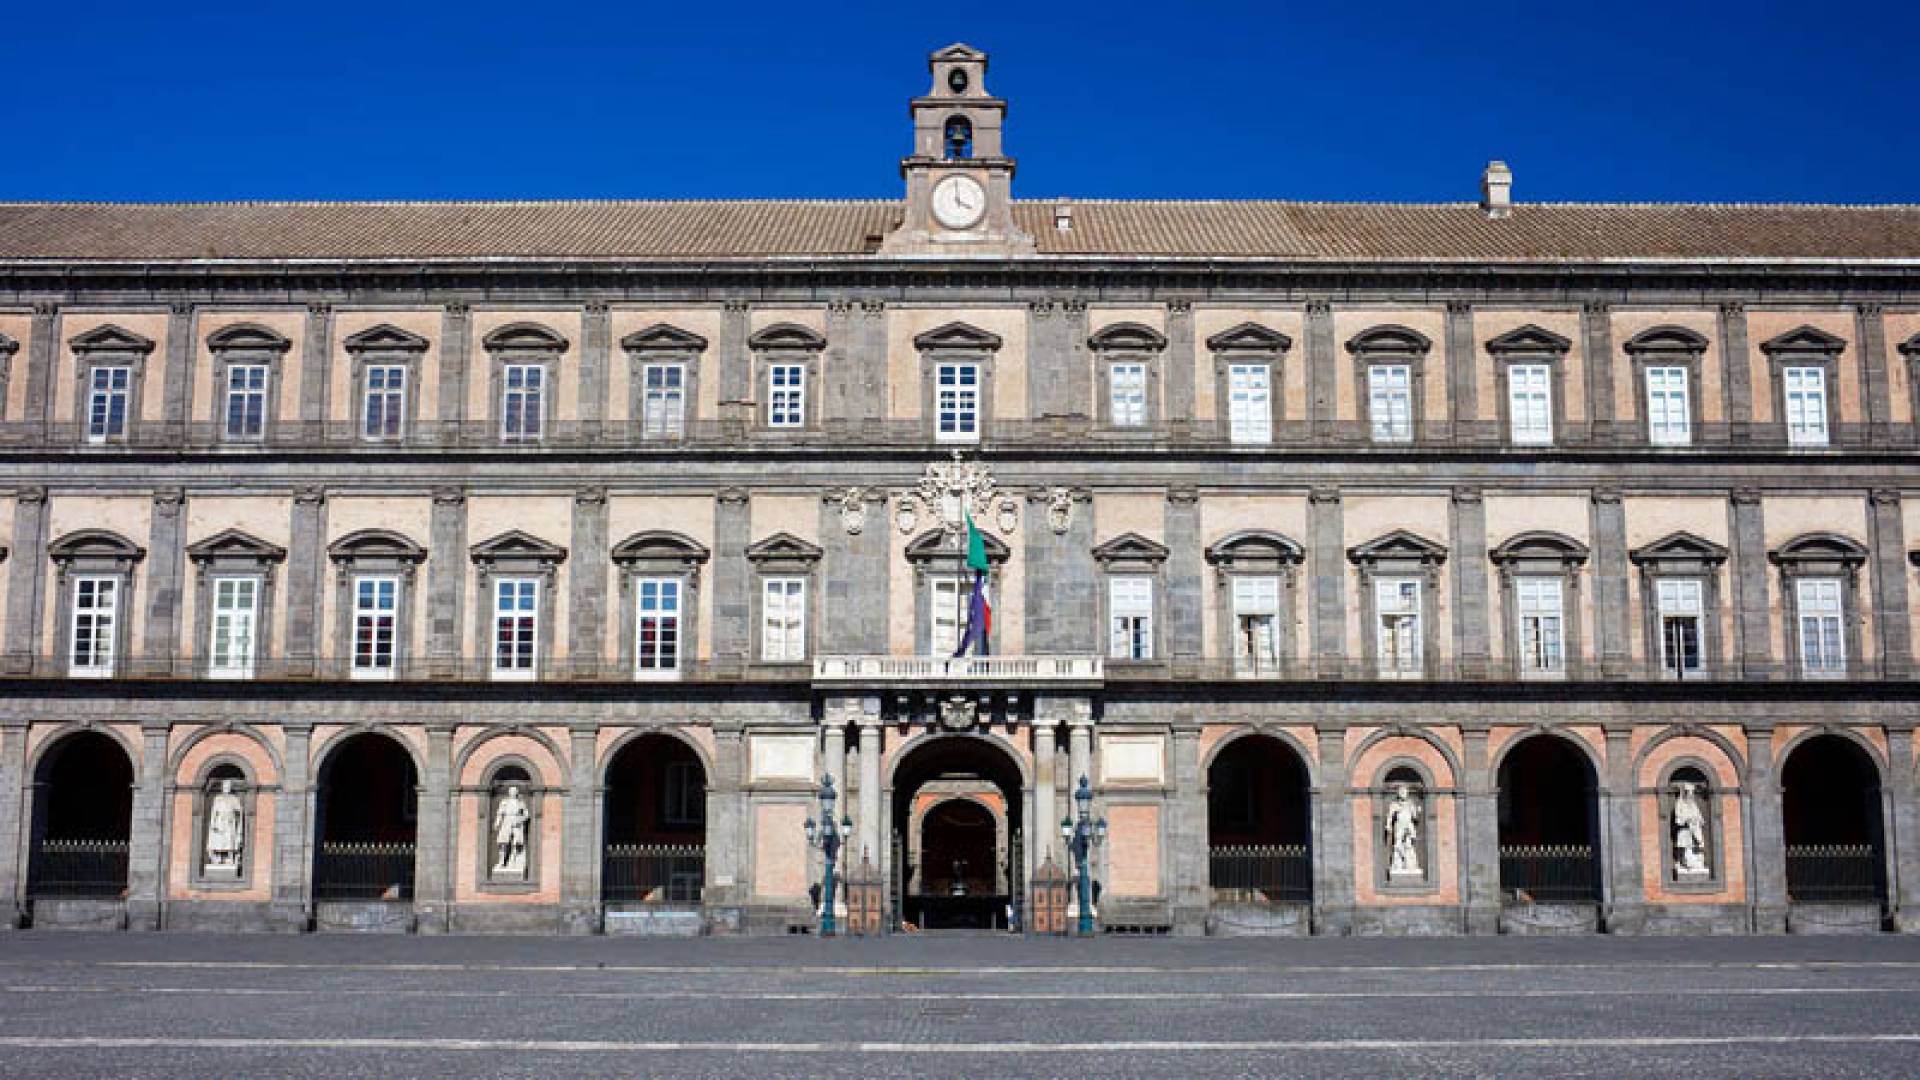 PLAZA PLEBISCITO, Palacio Real Exterior